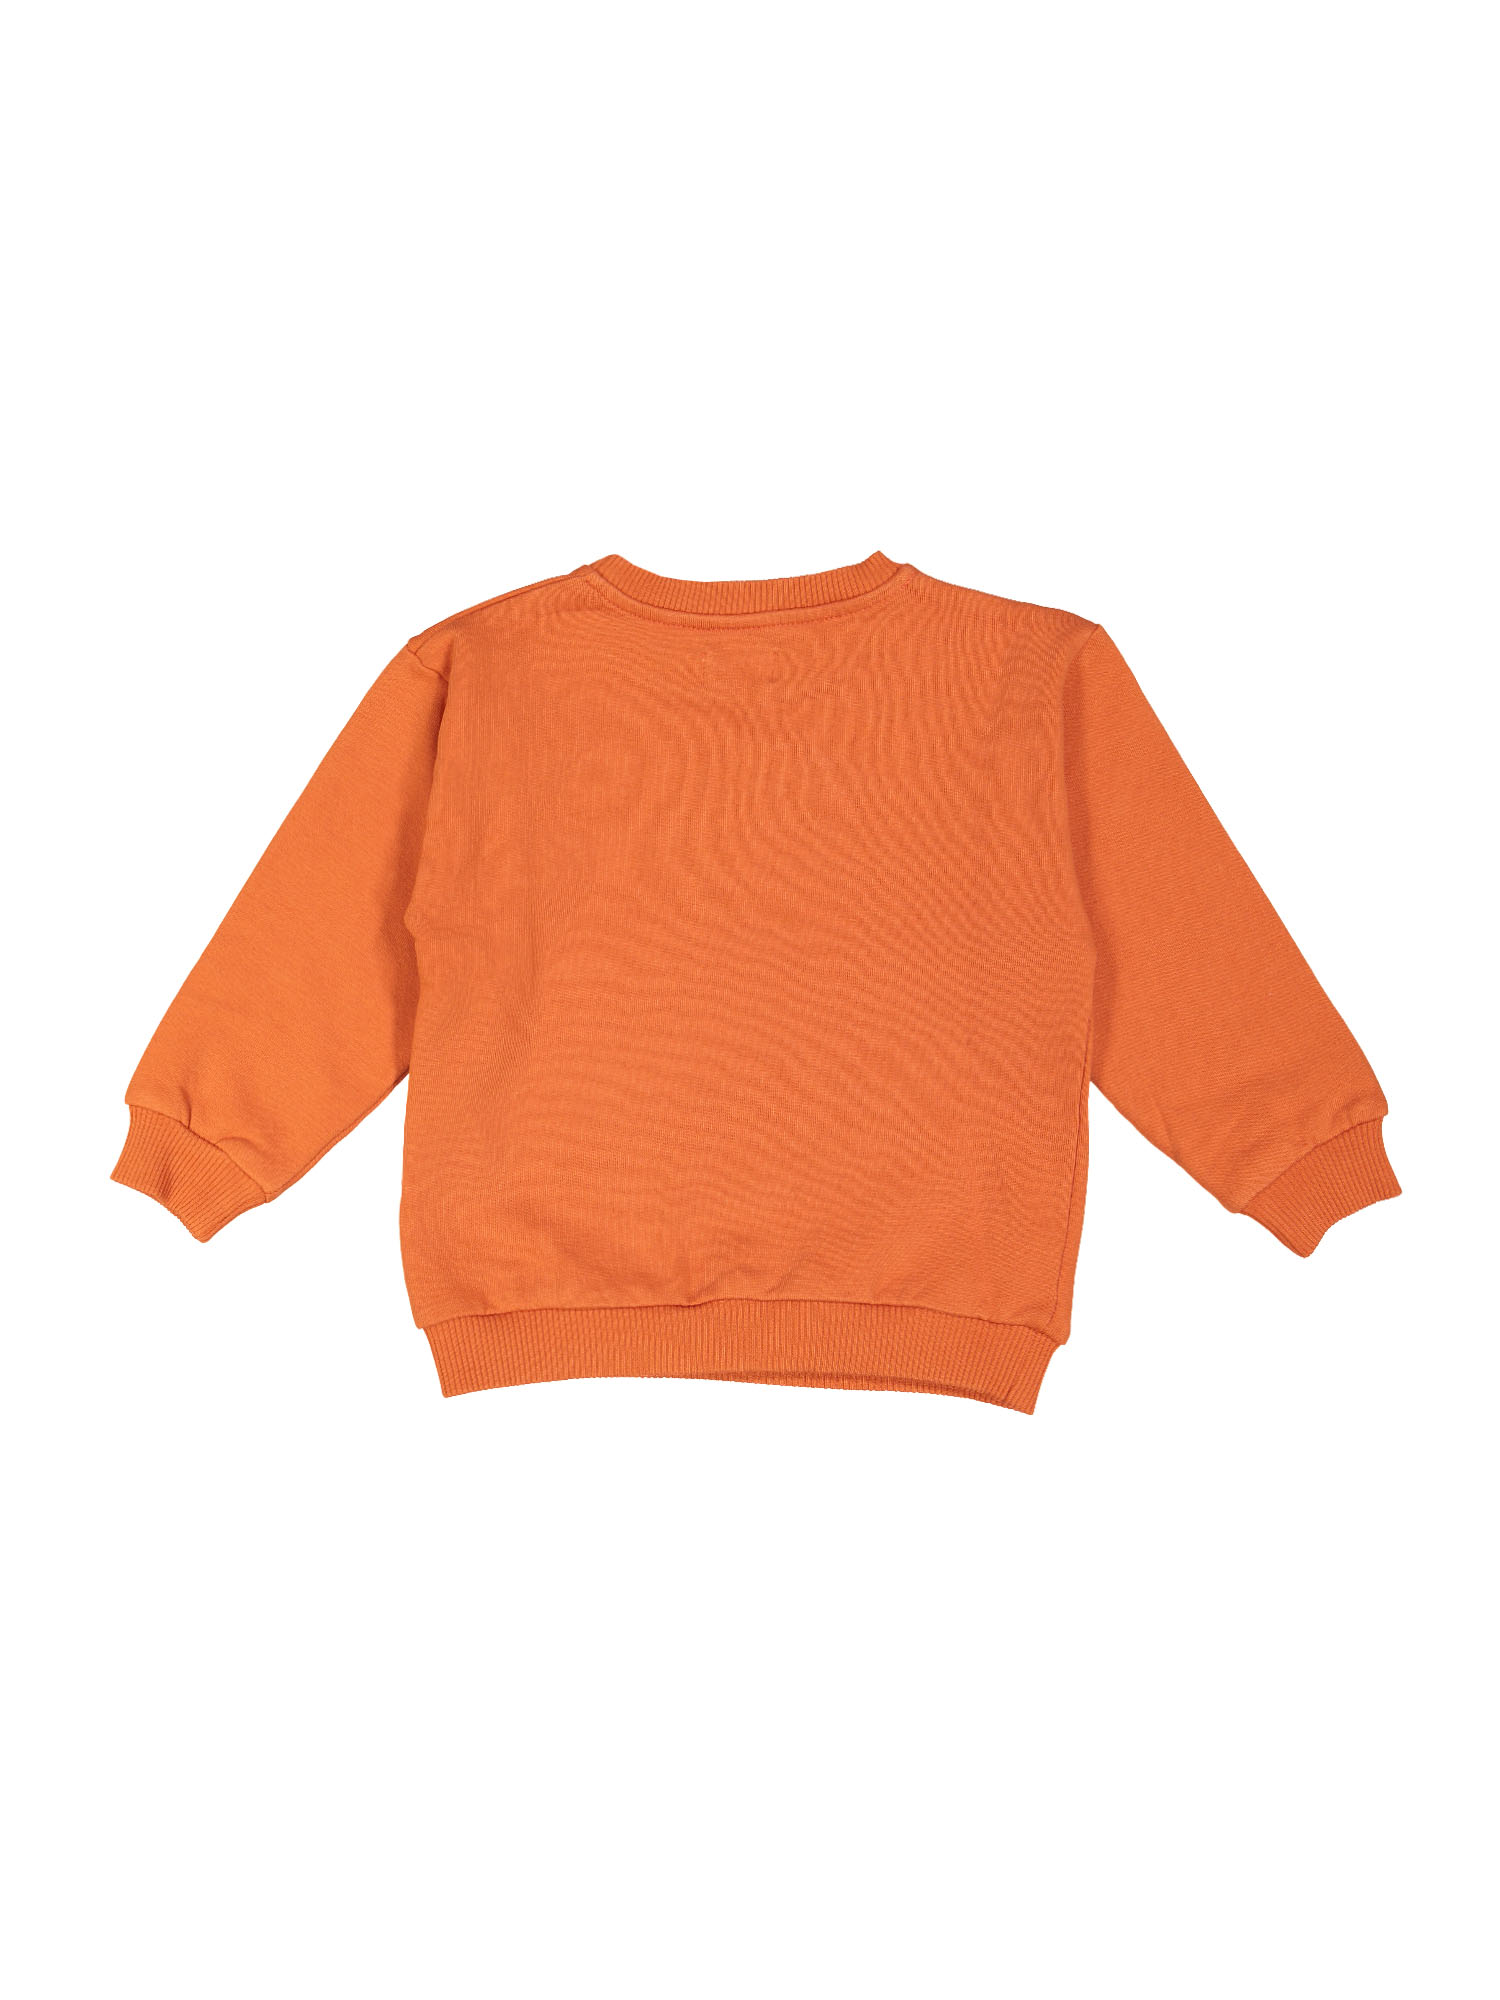 sweater boogie woogie oranje 10j